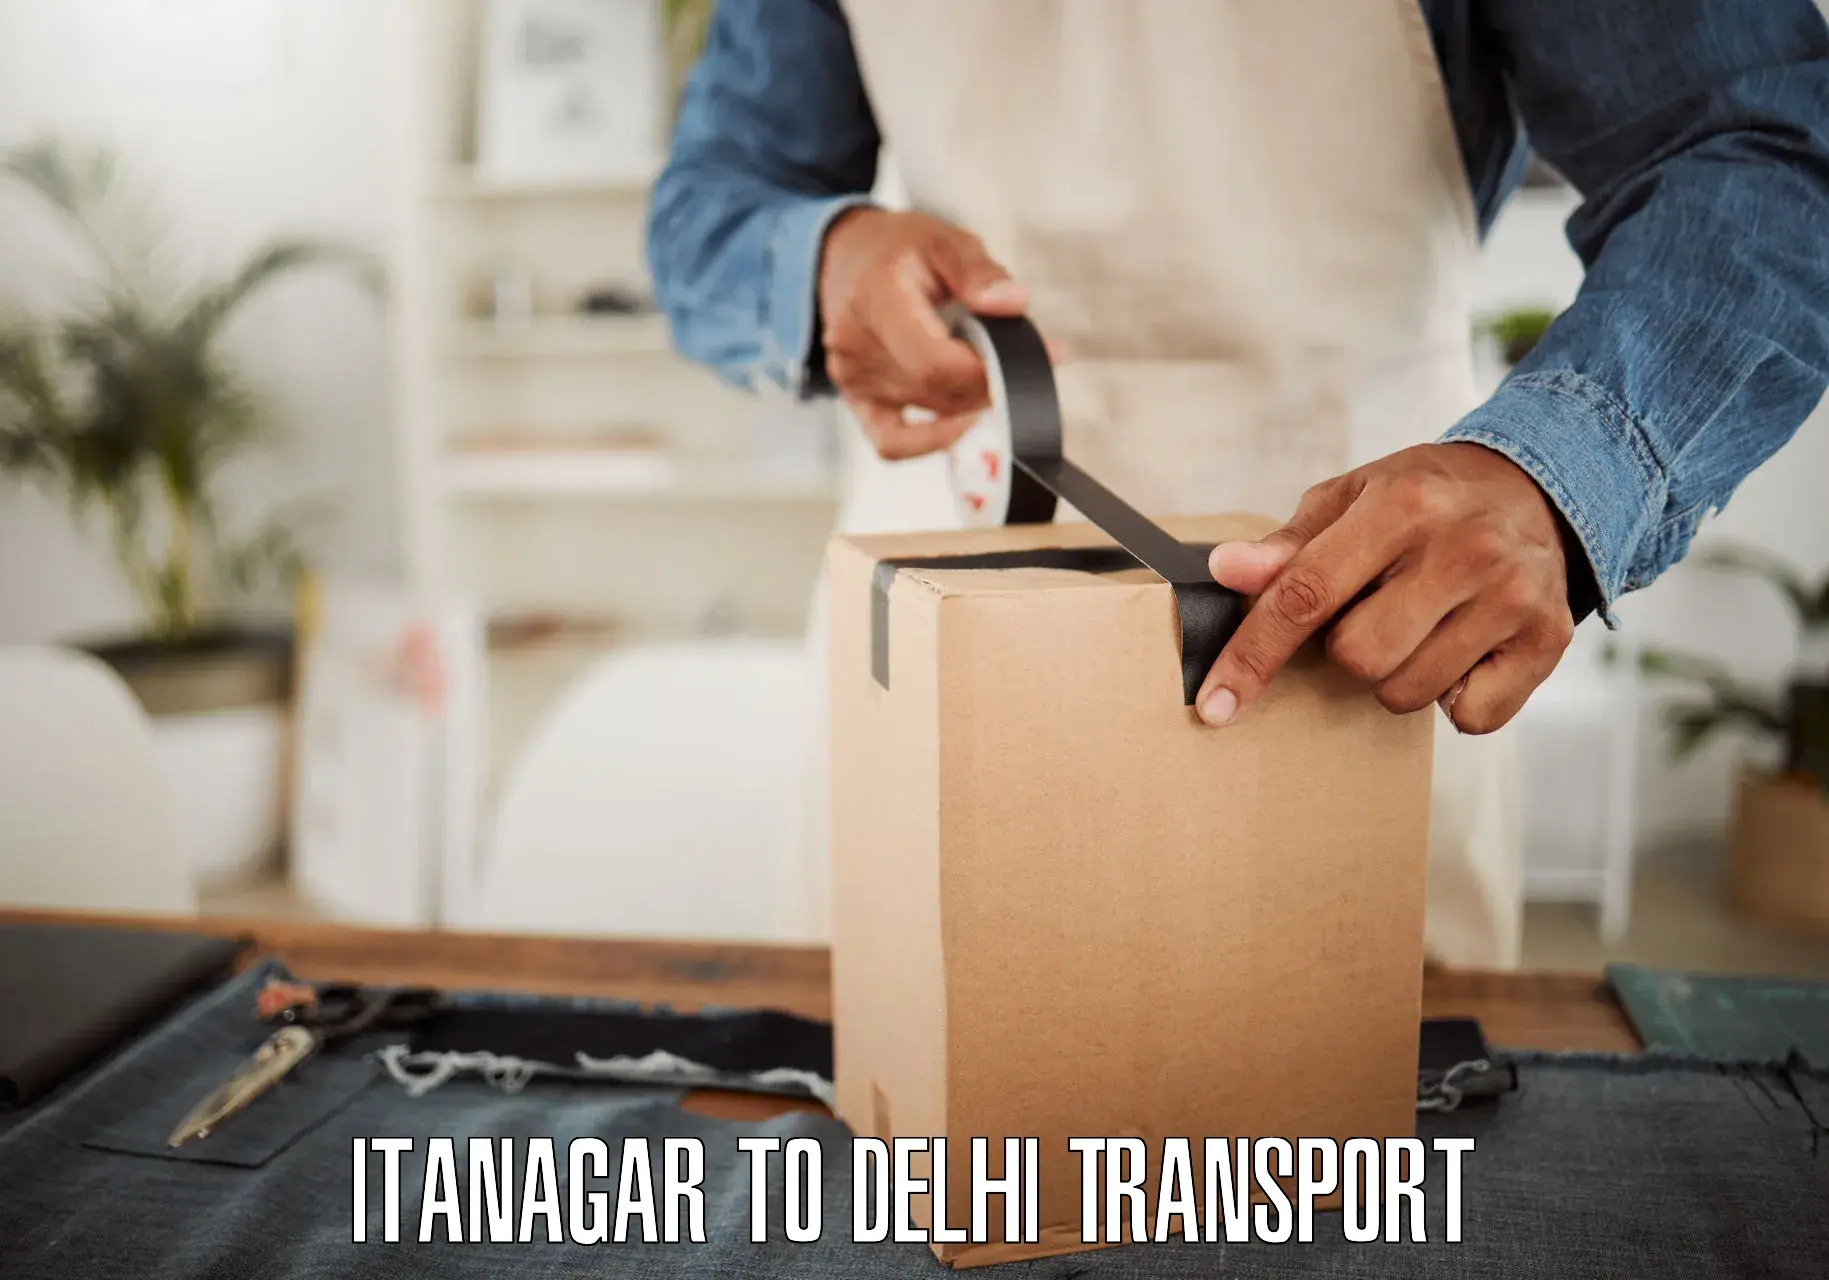 Transport shared services Itanagar to University of Delhi